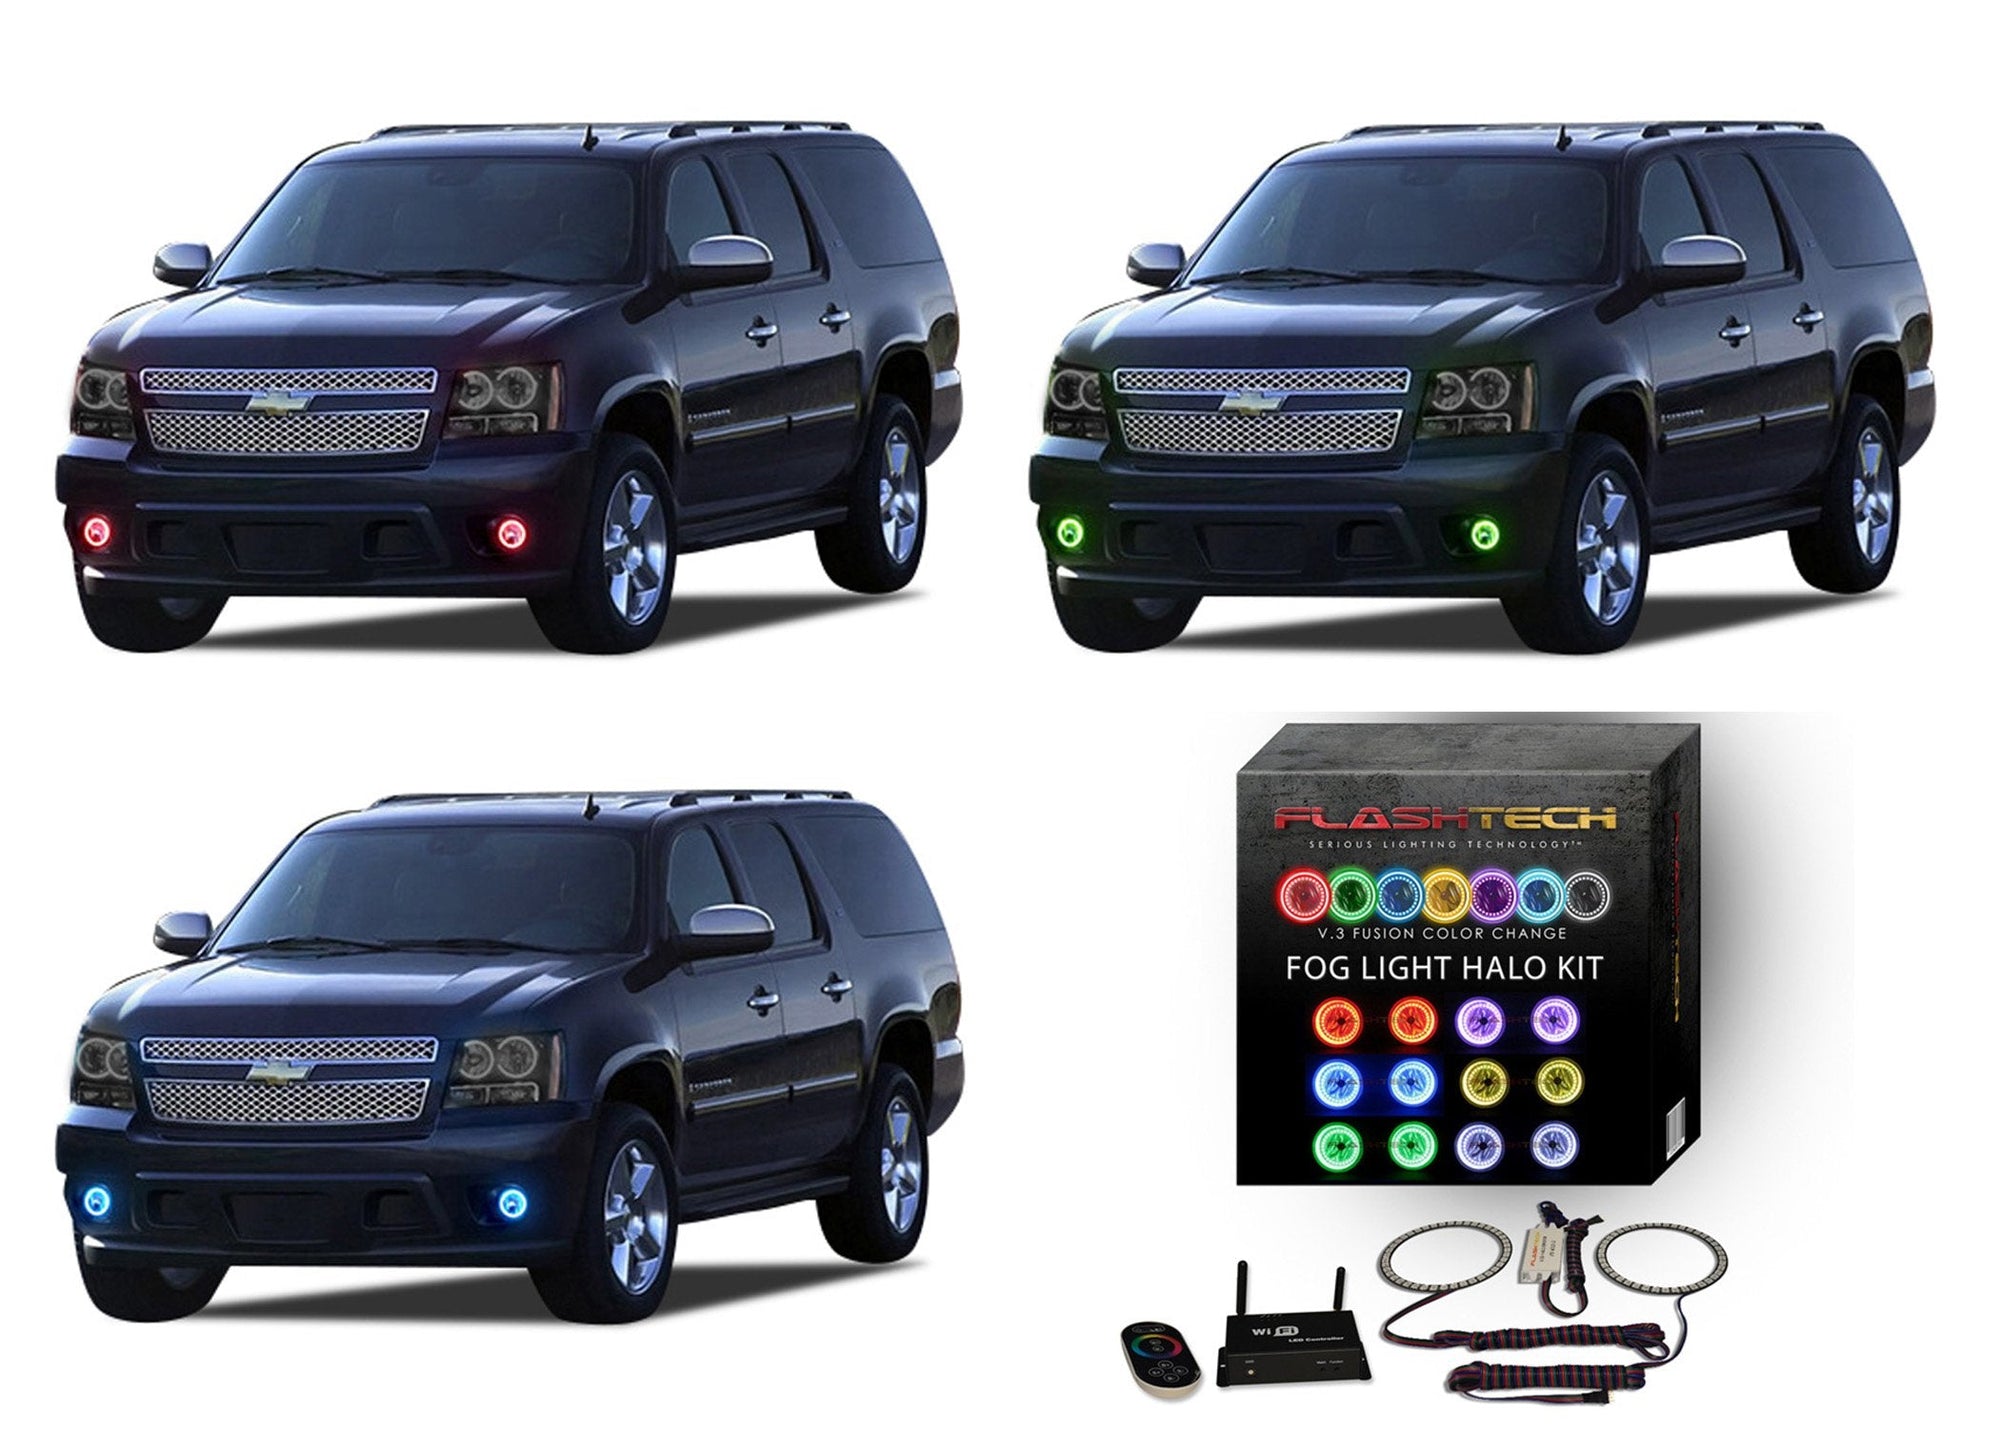 Chevrolet-Suburban-2007, 2008, 2009, 2010, 2011, 2012, 2013-LED-Halo-Fog Lights-RGB-WiFi Remote-CY-SU0713-V3FWI